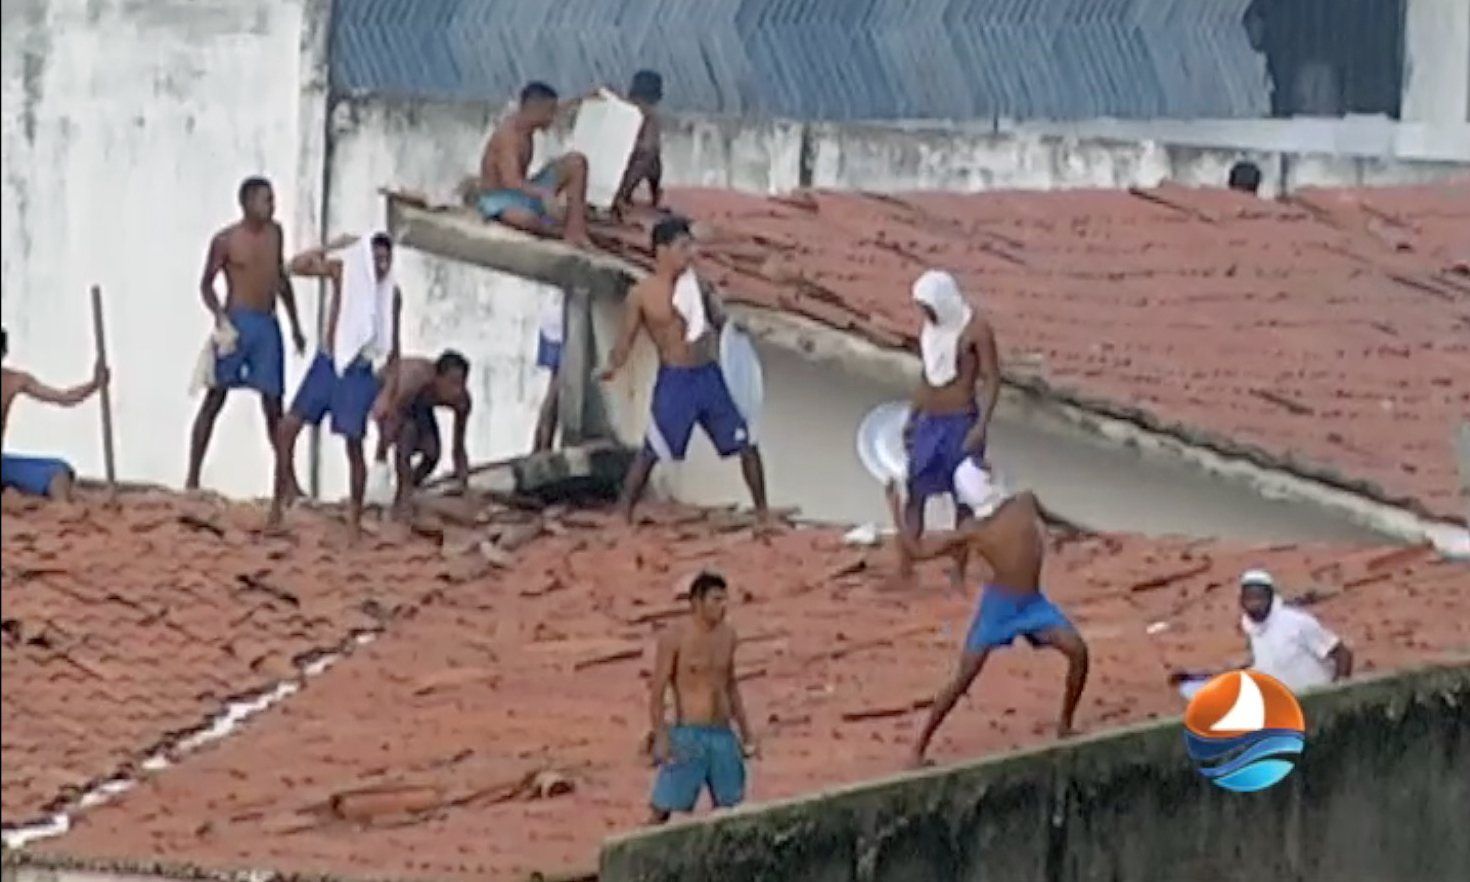 Αυτός είναι ο θλιβερός απολογισμός του νέου μακελειού σε φυλακή της Βραζιλίας